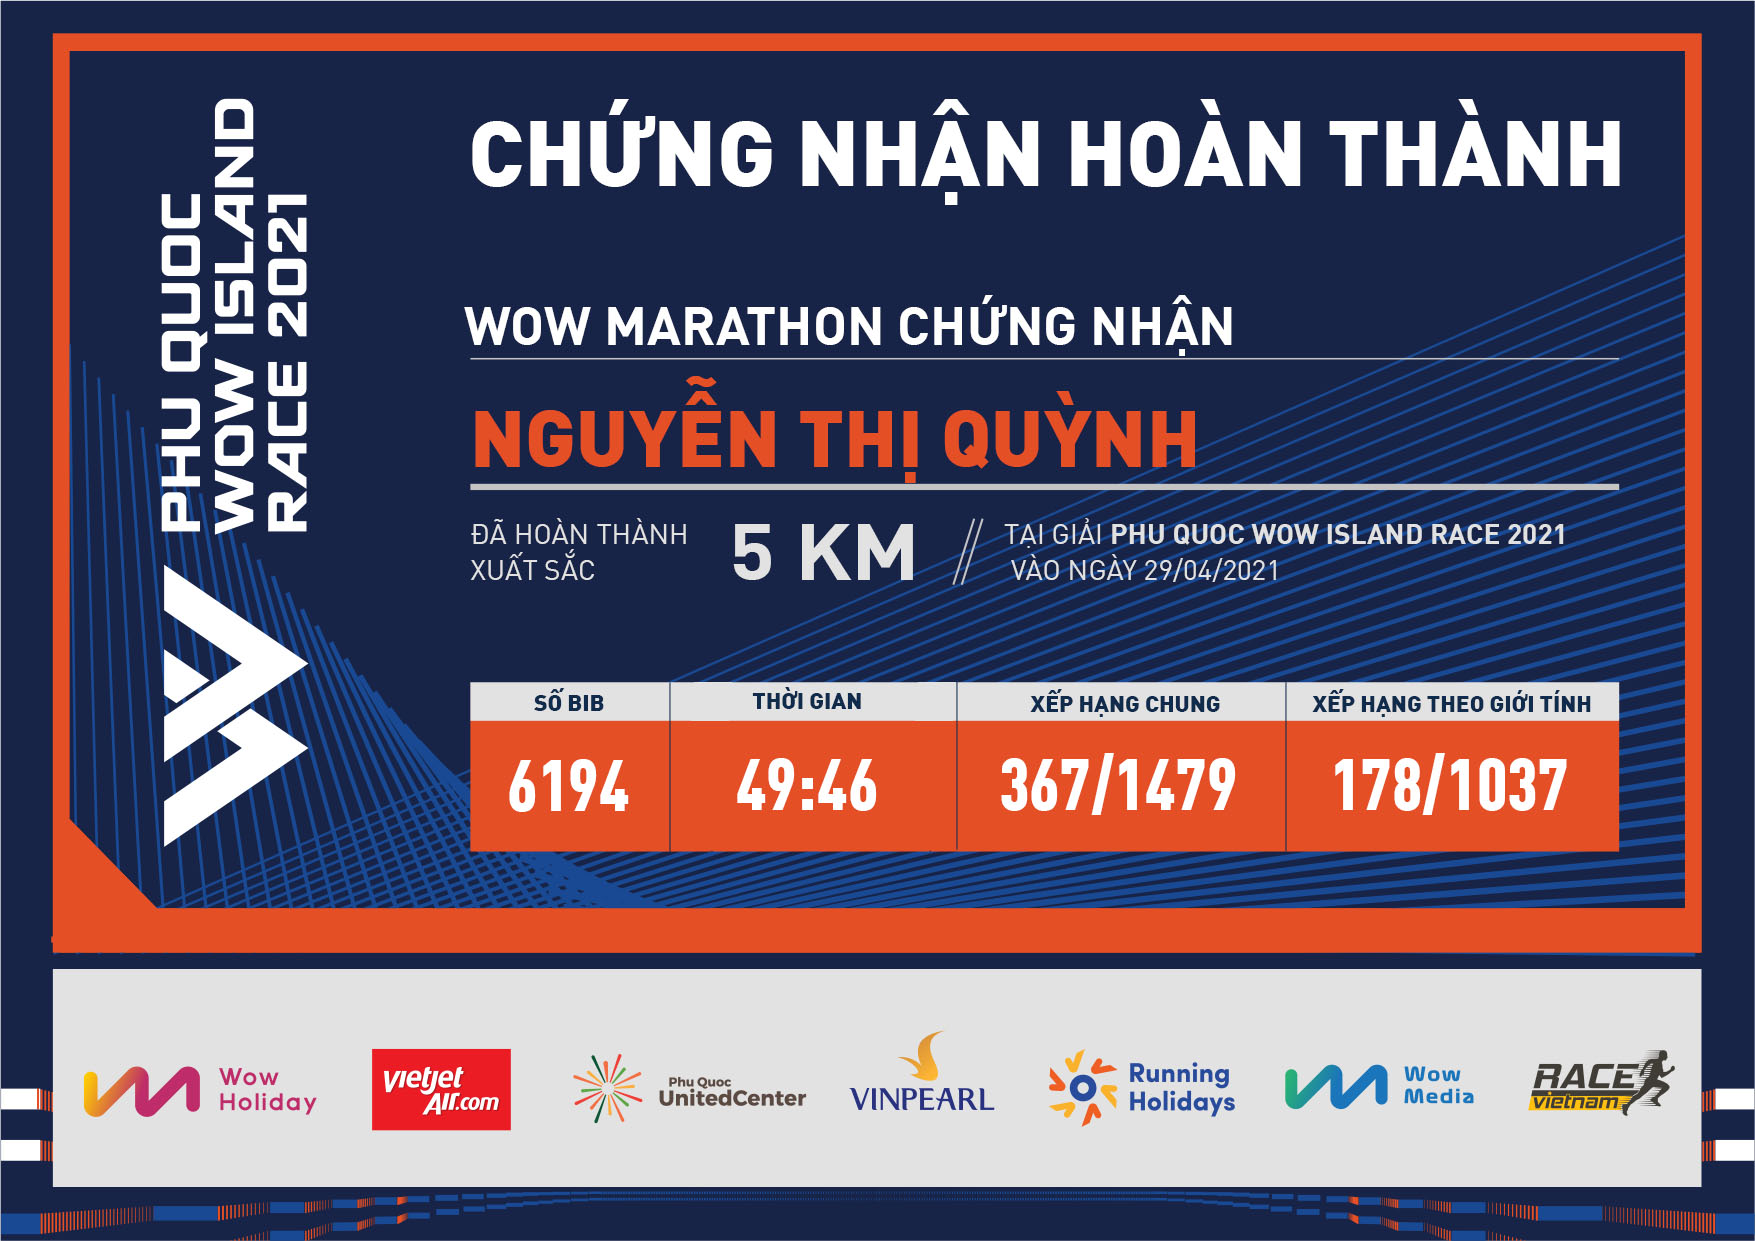 6194 - Nguyễn Thị Quỳnh